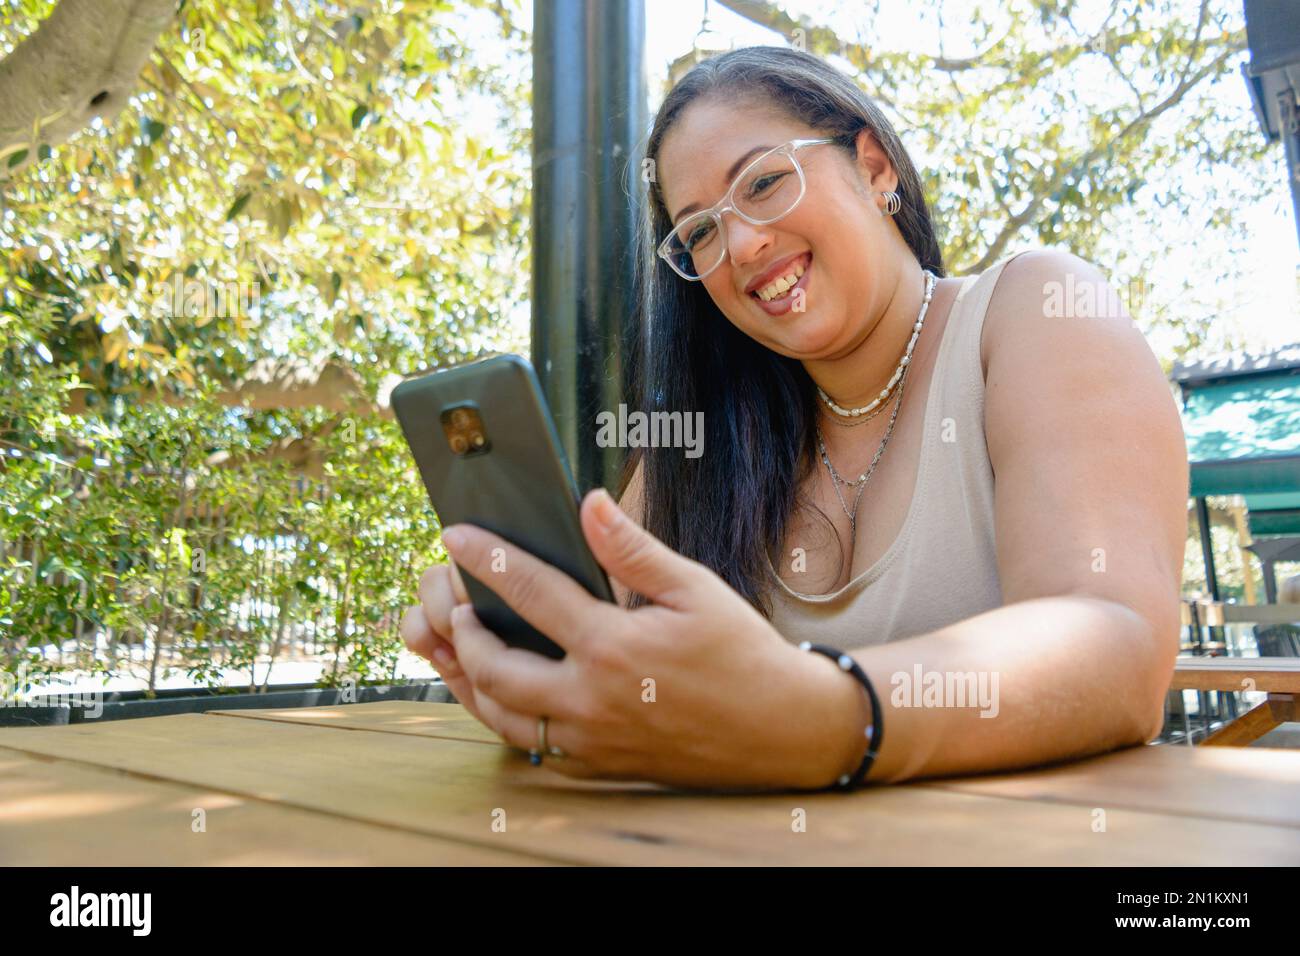 Lateinische Erwachsene Frau venezolanischer ethnischer Herkunft, fröhliches Lächeln, Telefonieren, Unterhaltung beim Surfen in sozialen Netzwerken und Surfen im Internet. Stockfoto